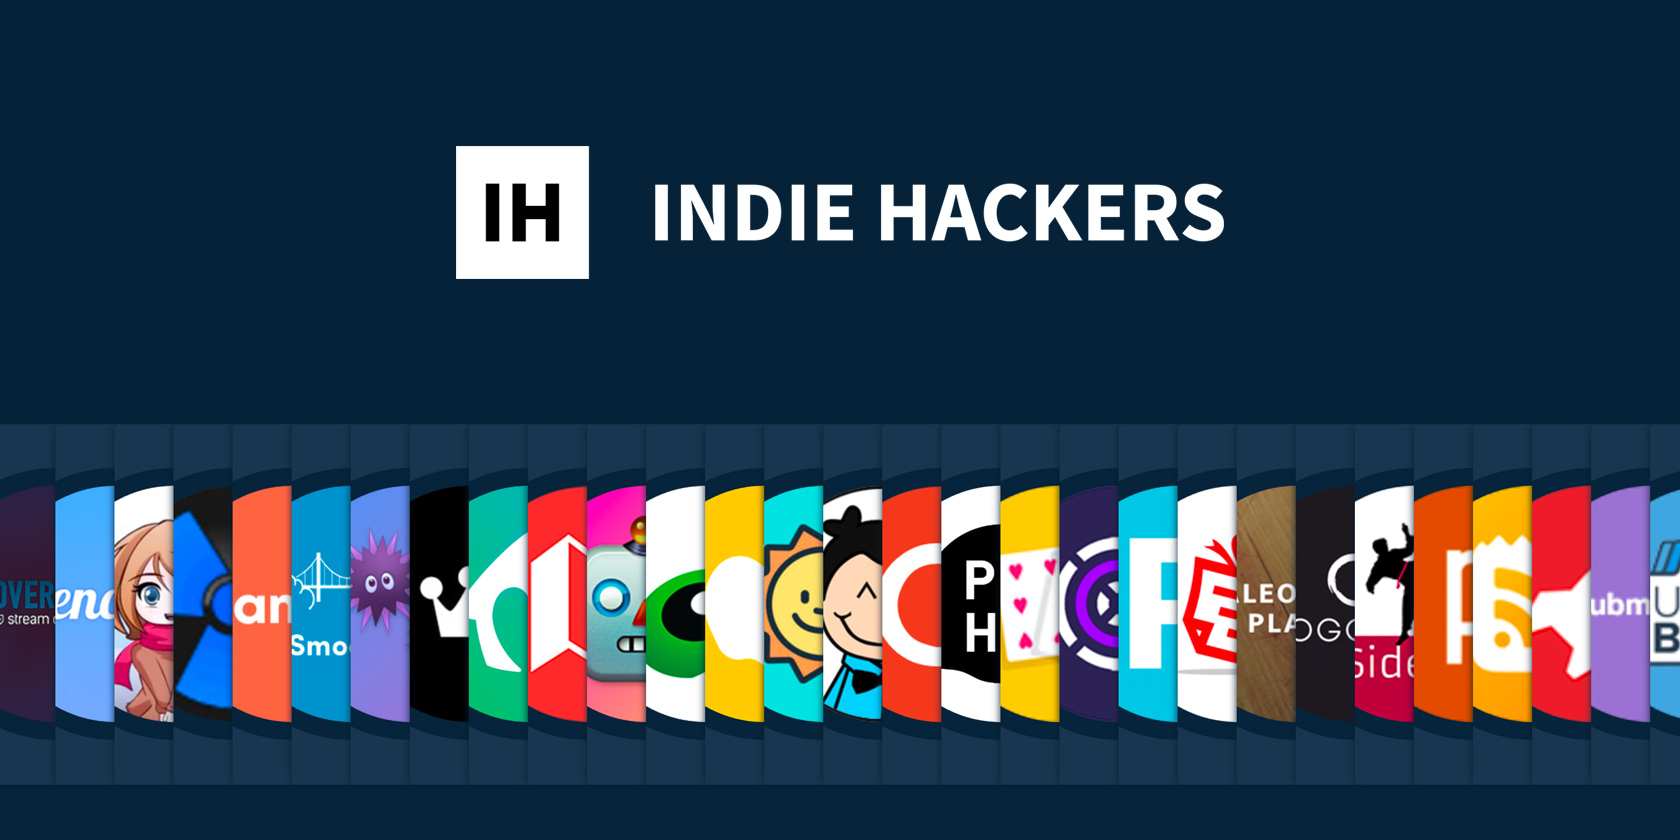 www.indiehackers.com